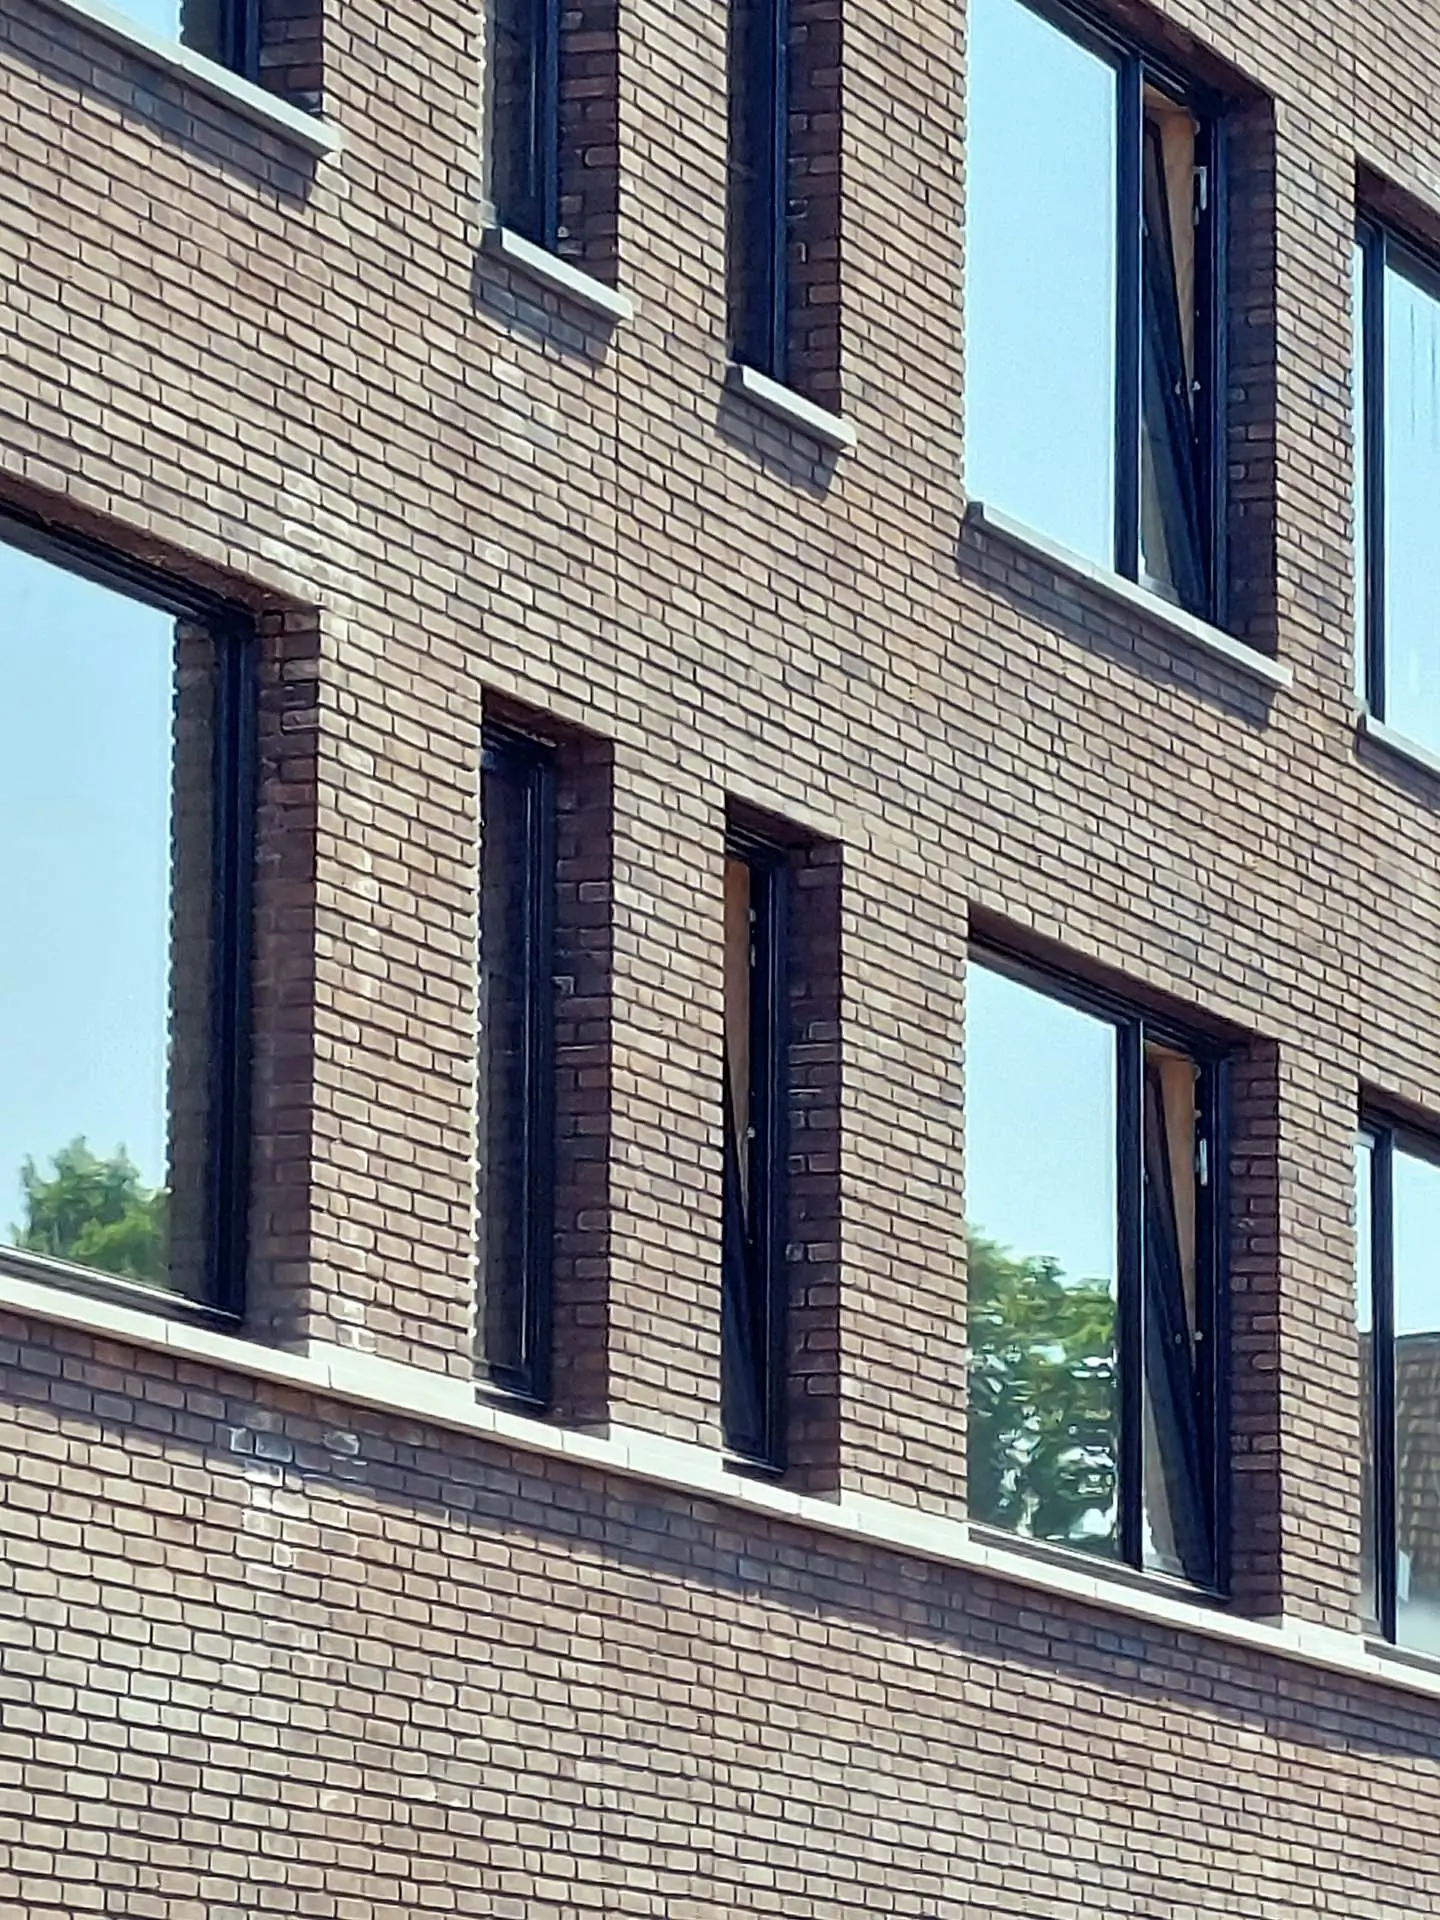 ENZO architectuur N interieur - gonnetstraat - close - up - Amsterdam - exterieur - nieuwbouw